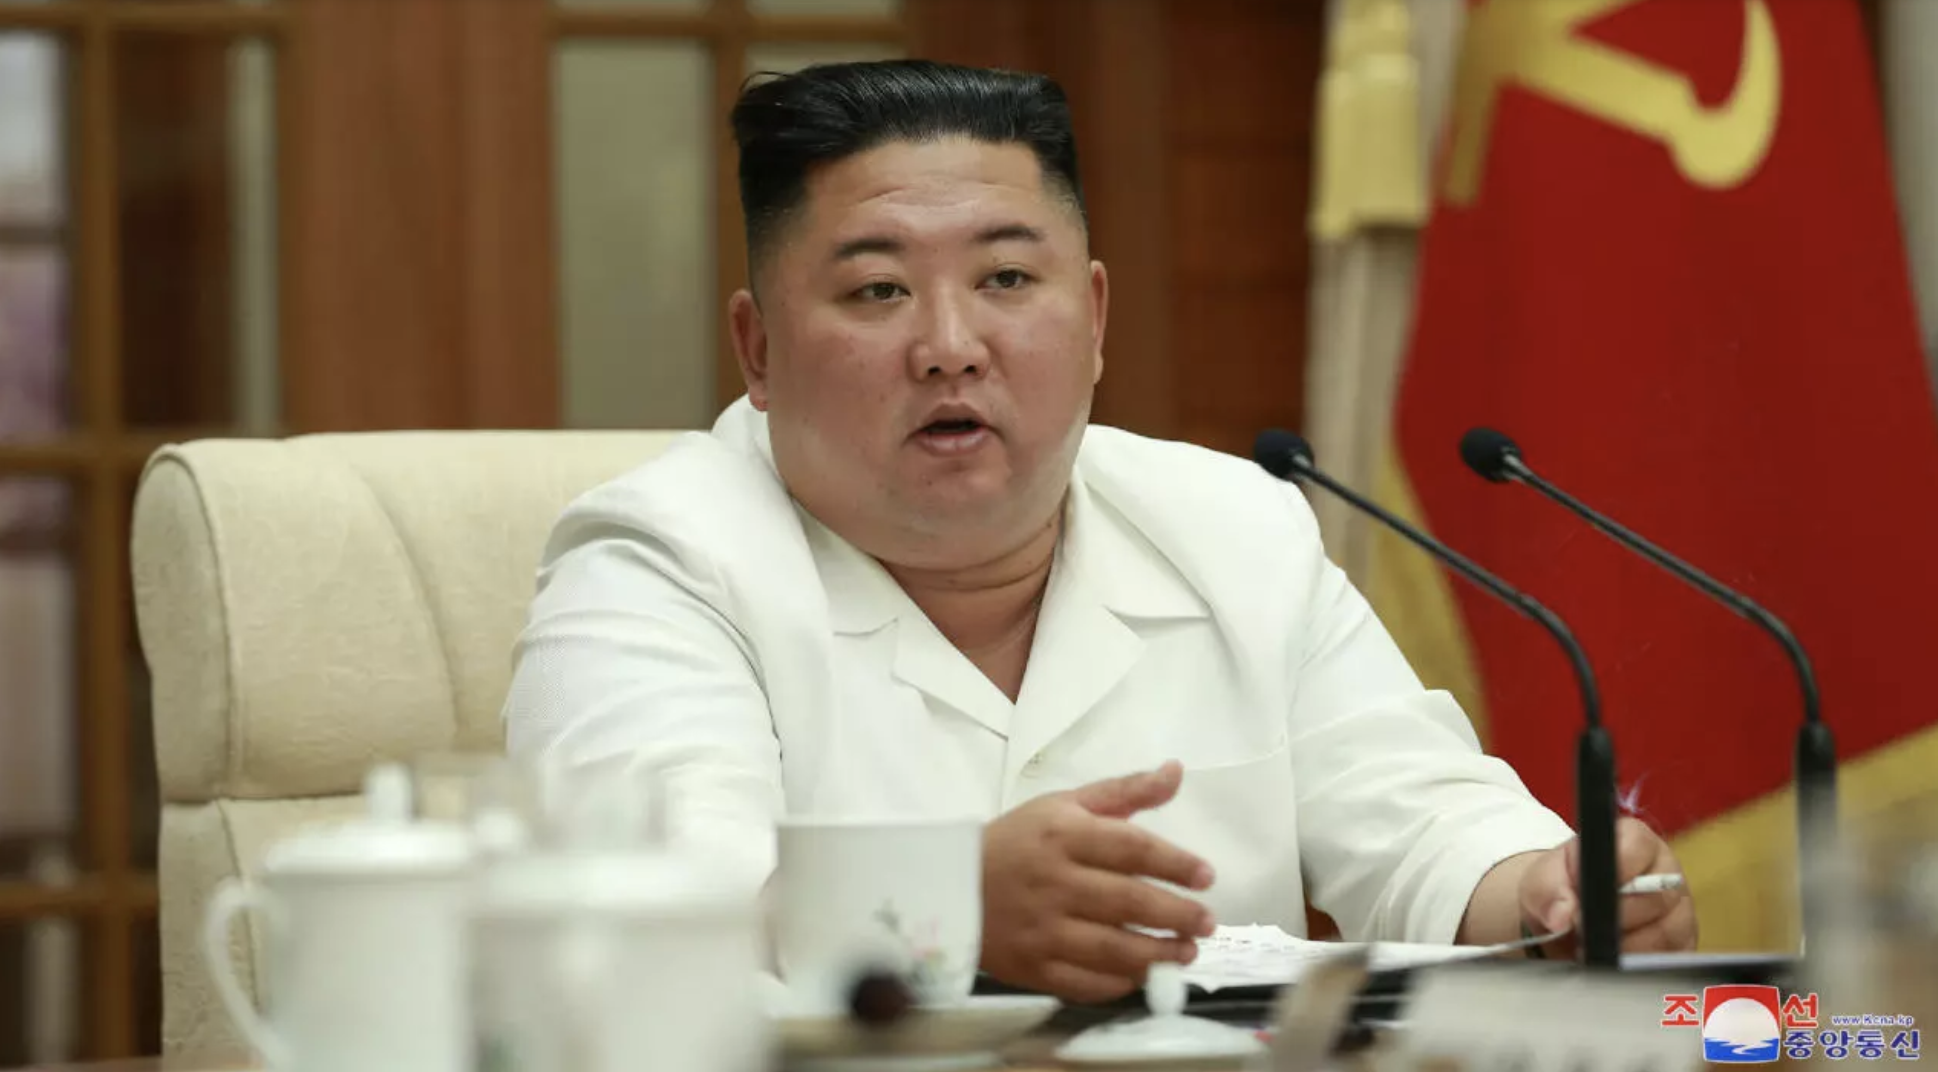 Pe Kim Jong Un l-a supărat ceva. Oamenii sunt îngroziți de ce va urma